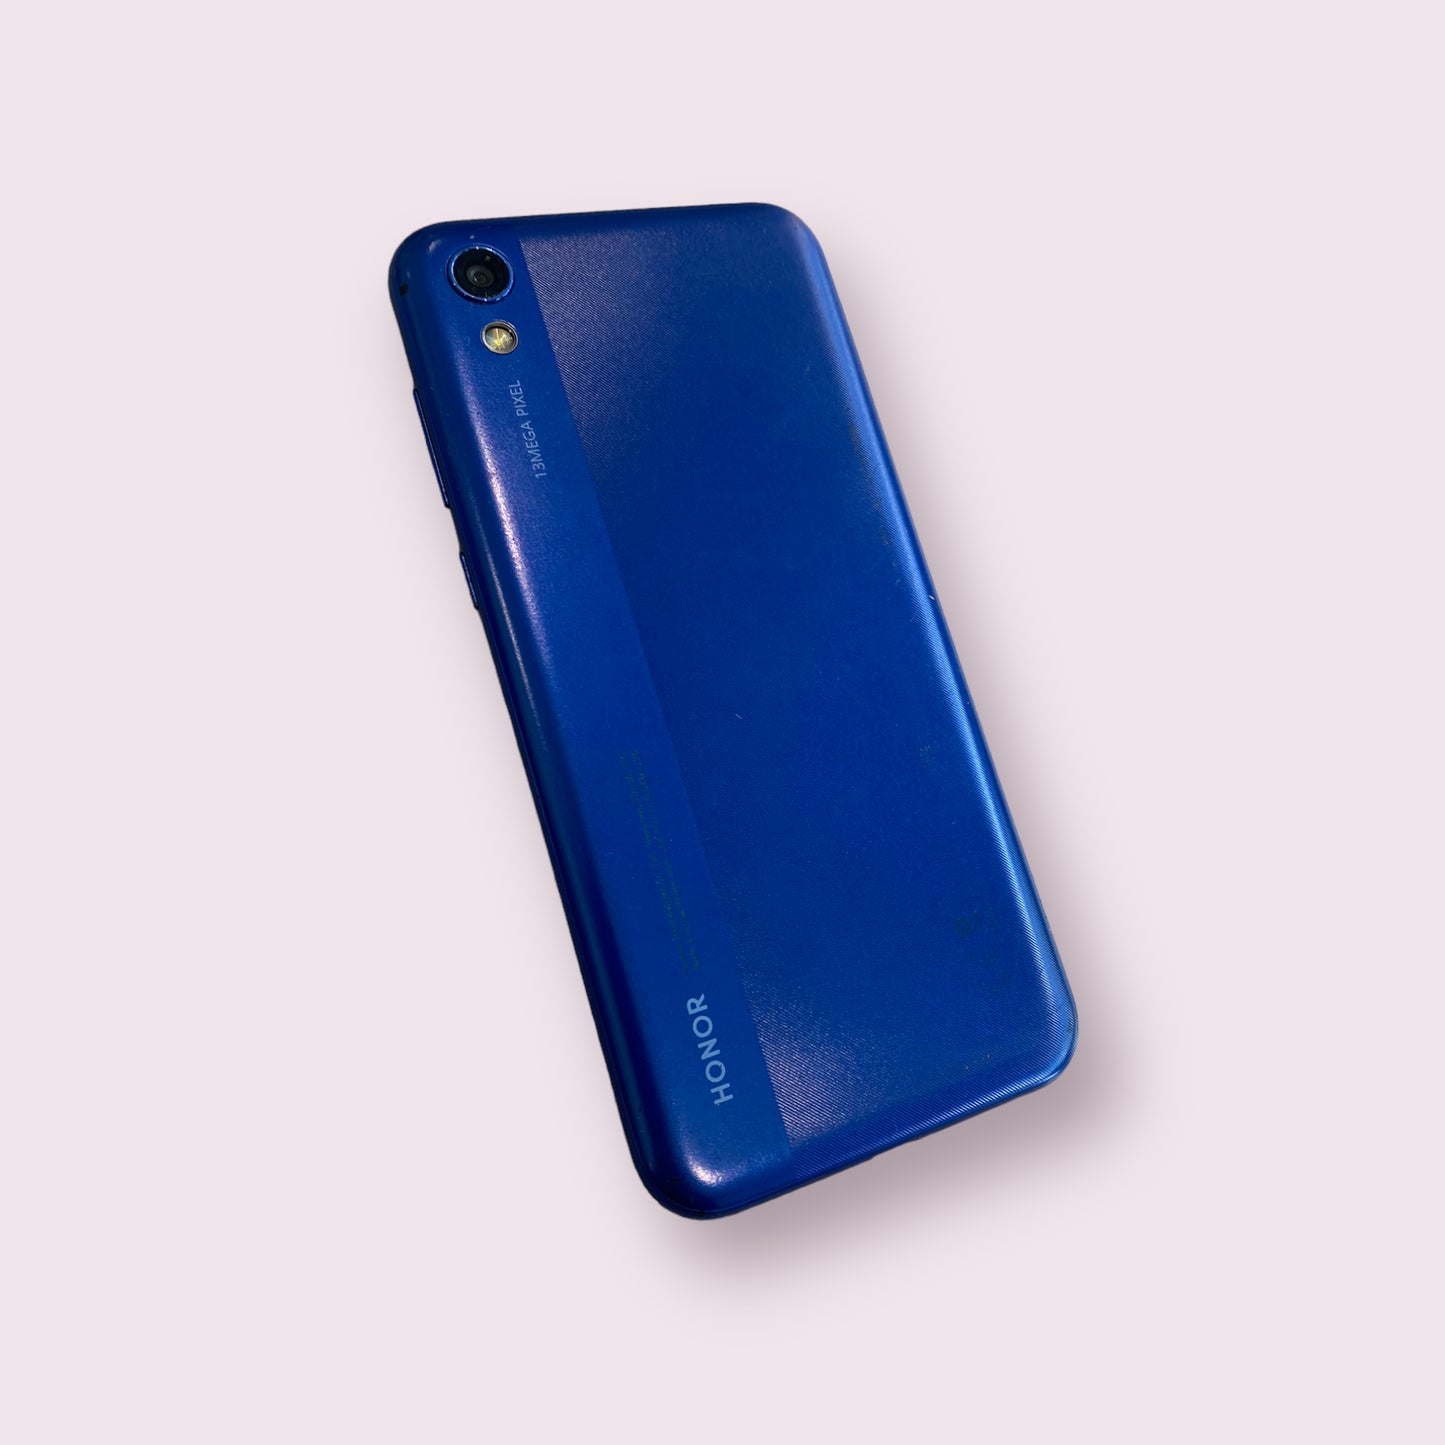 Huawei Honor 8S 32GB Blue Dual Sim - Unlocked - Grade B